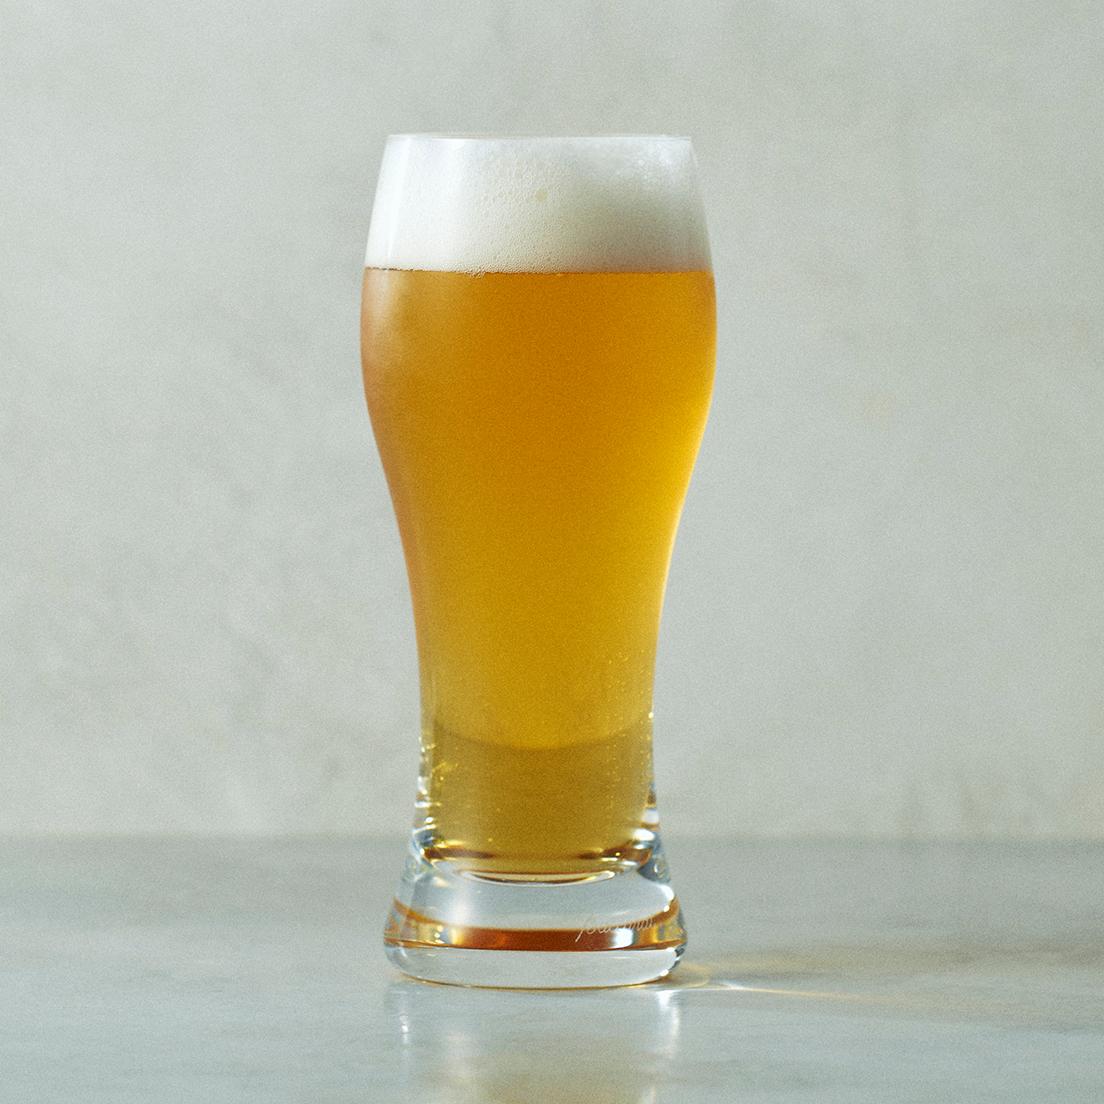 产生啤酒顺畅对流并产生细气泡的细长形式非常出色。 <Baccarat>的工匠制作的水晶玻璃宝石。 “Onology 啤酒杯”H17.5cm 20,900 日元。 ● 百家乐店丸之内